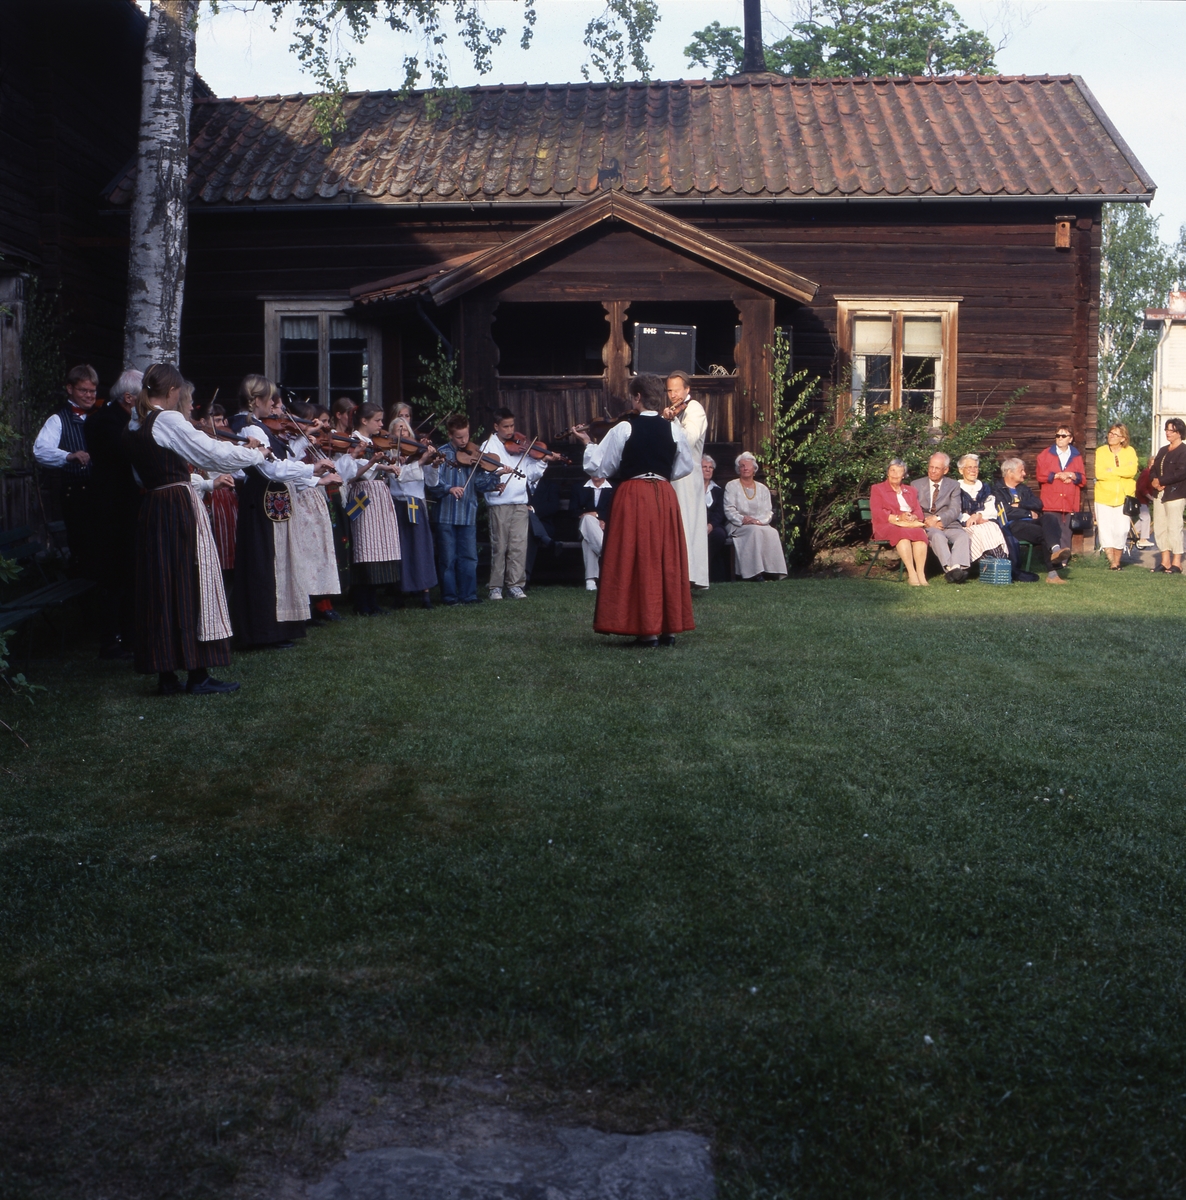 Nationaldagen i Bollnäs 6 juni 2001. Spelmän och publik utanför en gammal timrad gård.